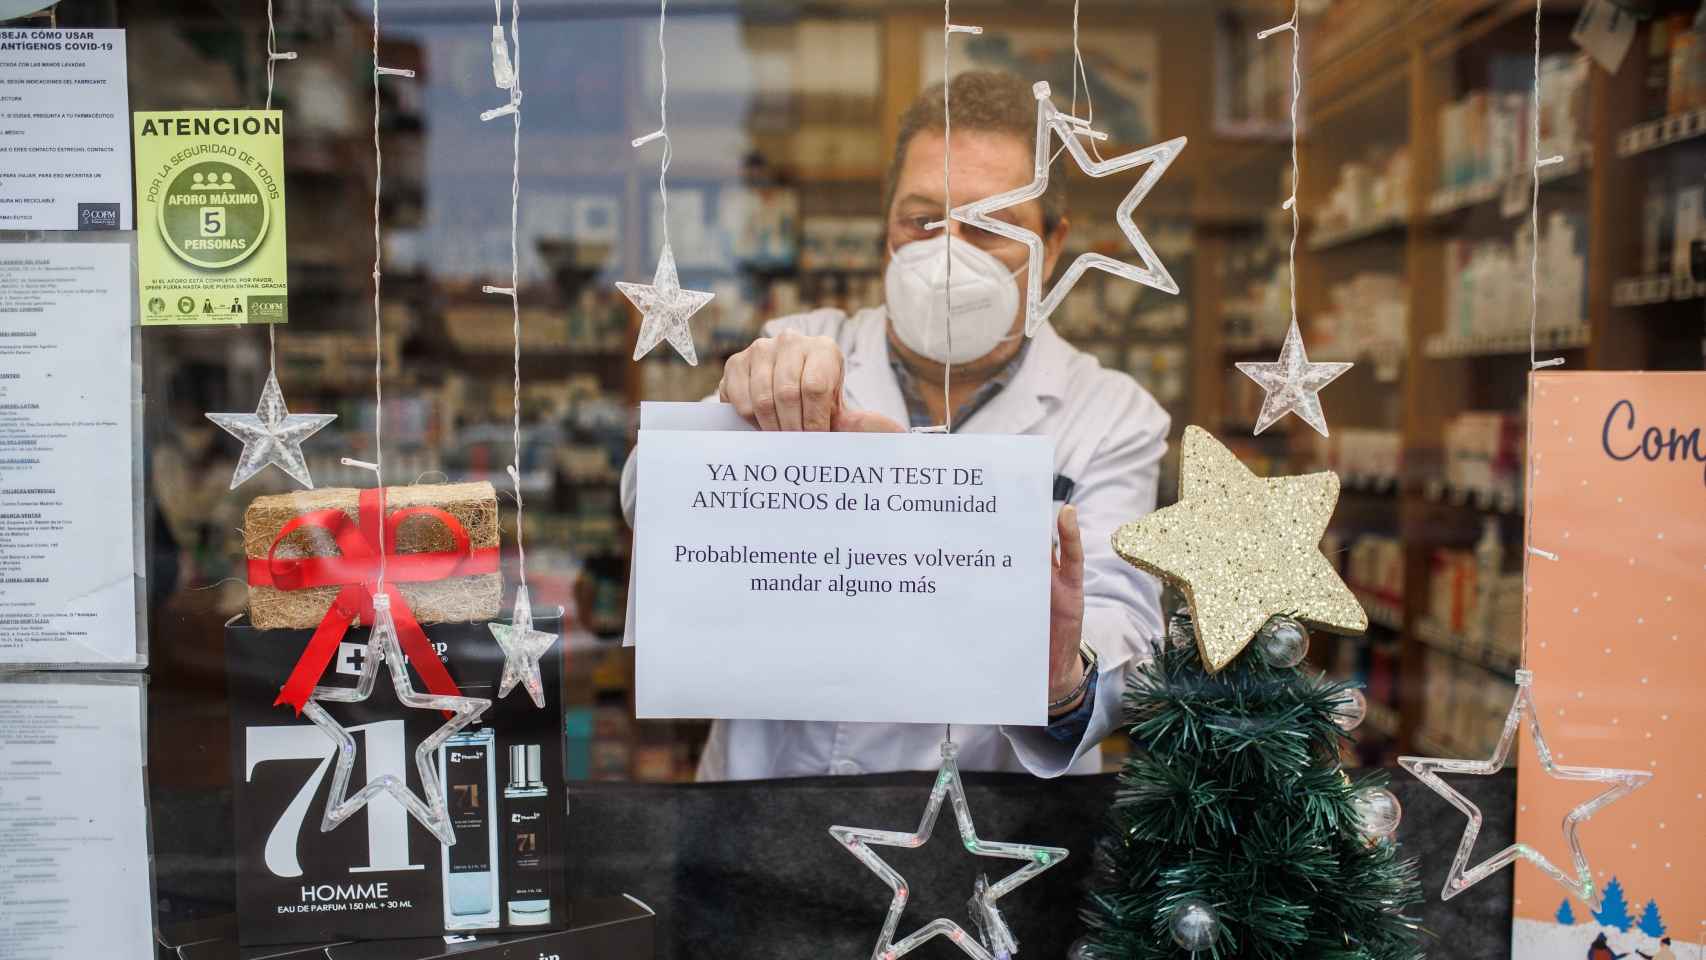 Un cartel en la farmacia avisa de que no hay test de antígenos.